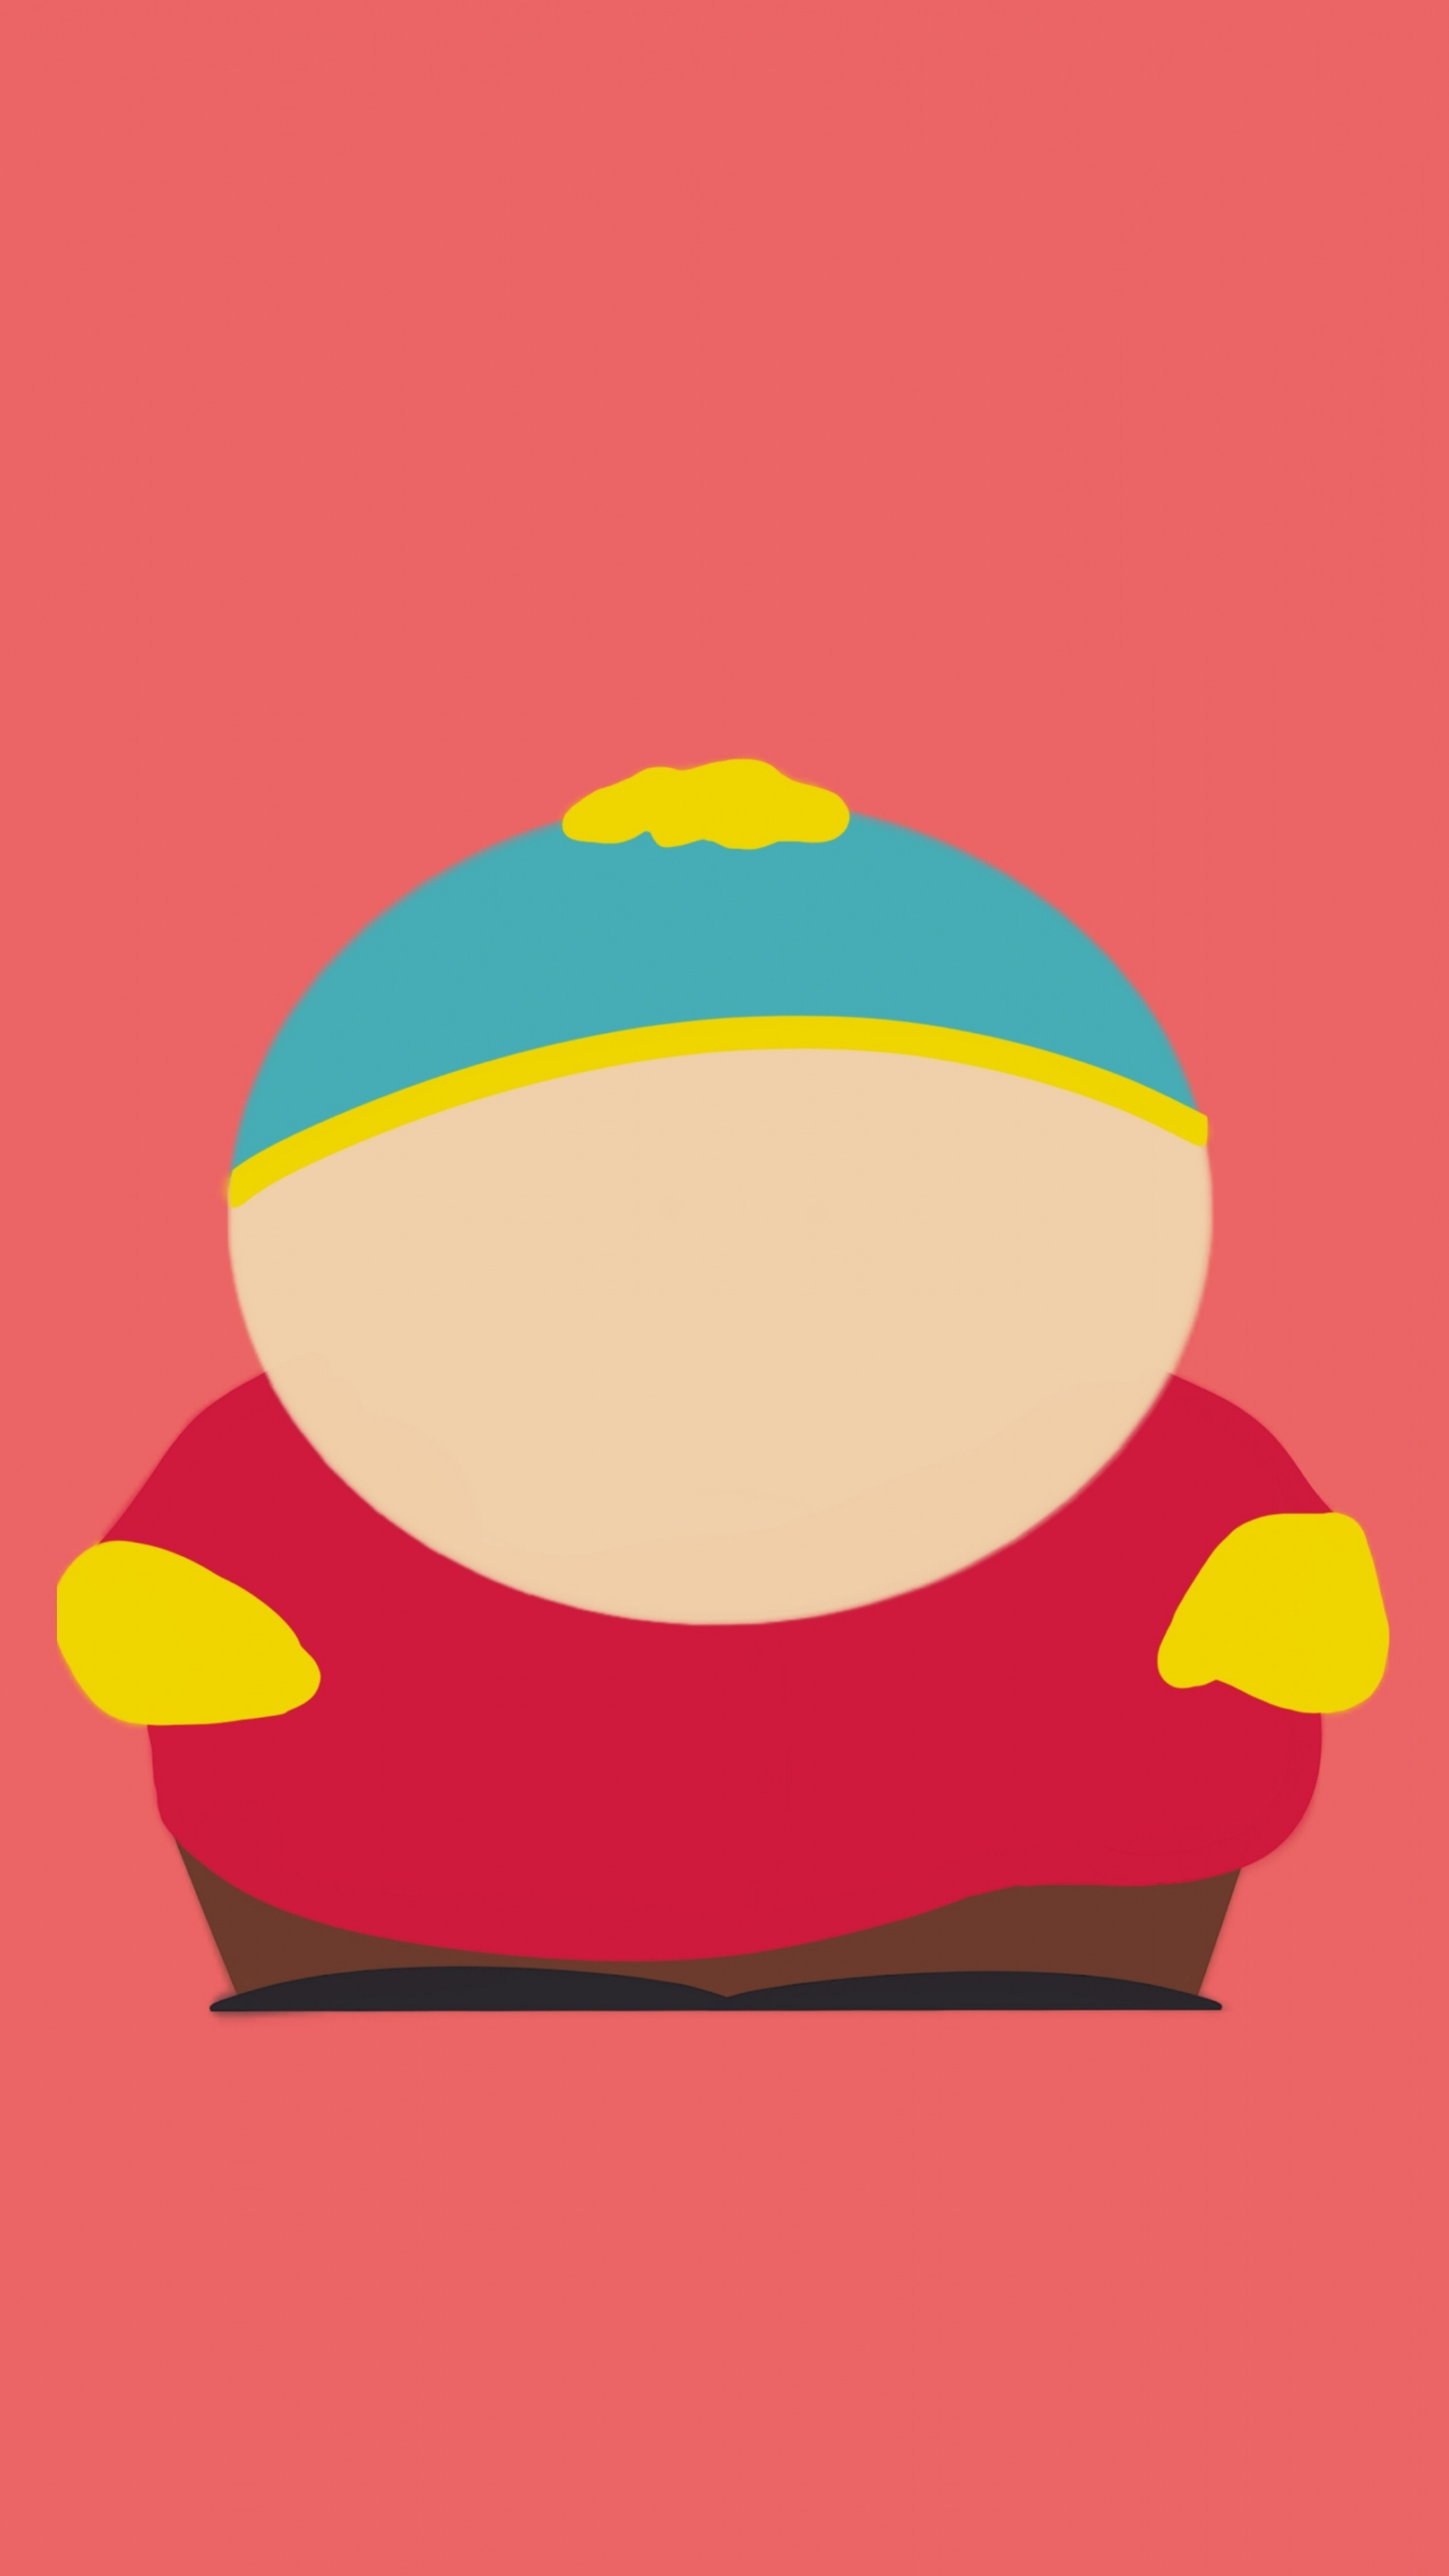 Cartman Wallpapers